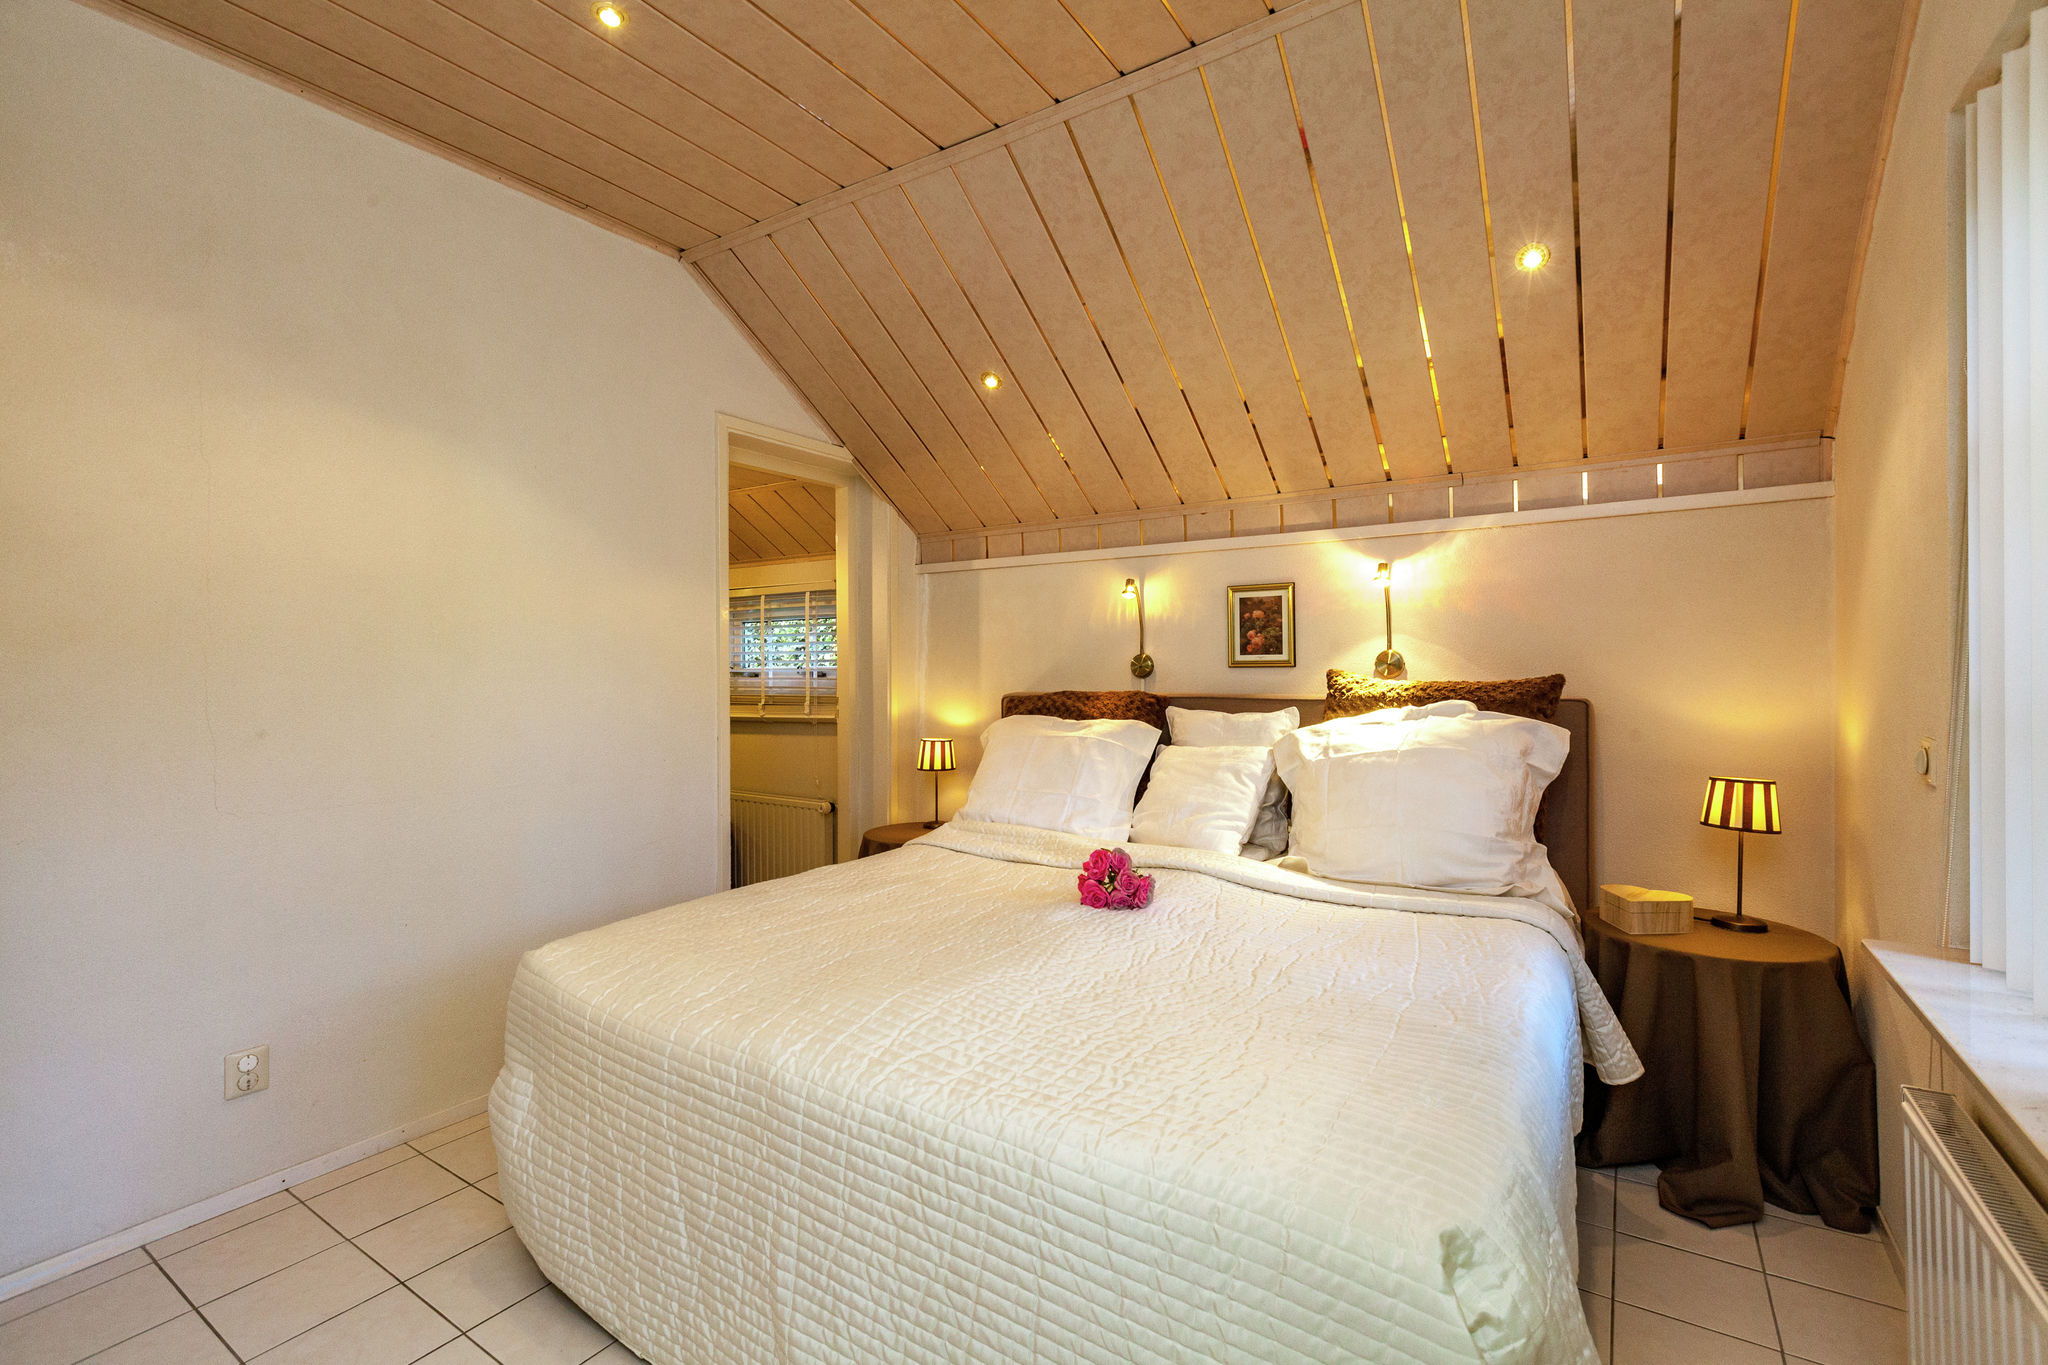 Comfortabel appartement in een rustige omgeving, vlakbij bos en strand